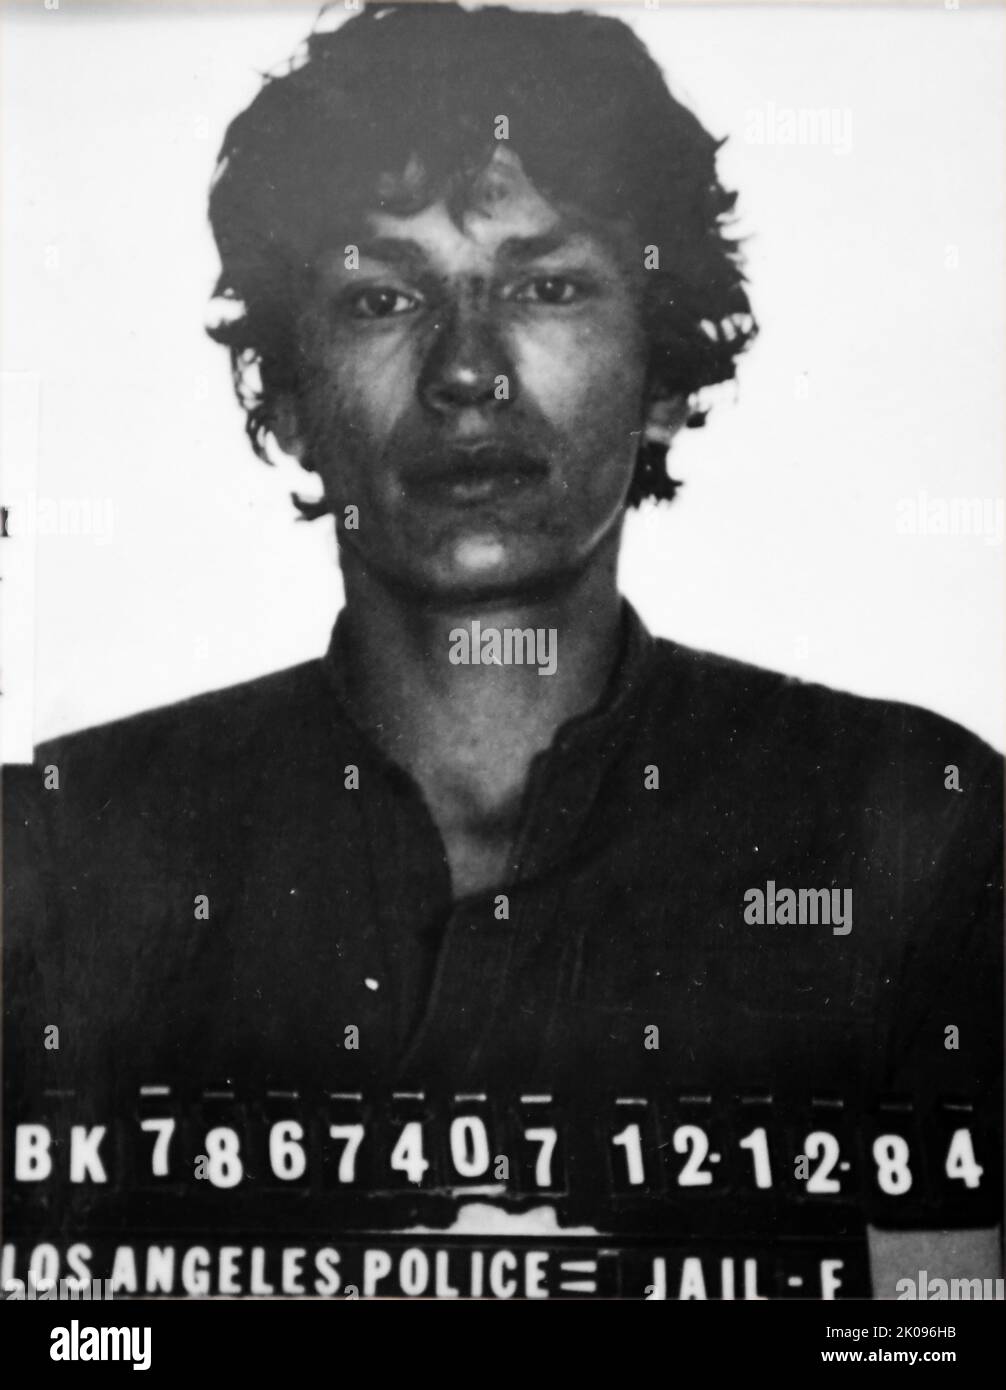 Ricardo 'Richard' Leyva Munoz Ramirez (1960 - 7 juin 2013), surnommé l'Intruder de la vallée, comme ses attaques ont été d'abord regroupées dans la vallée de San Gabriel, et le Stalker de nuit, était un tueur en série américain, un violeur en série, kidnappeur, agresseur d'enfants, et cambrioleur, condamné en 1989. Banque D'Images